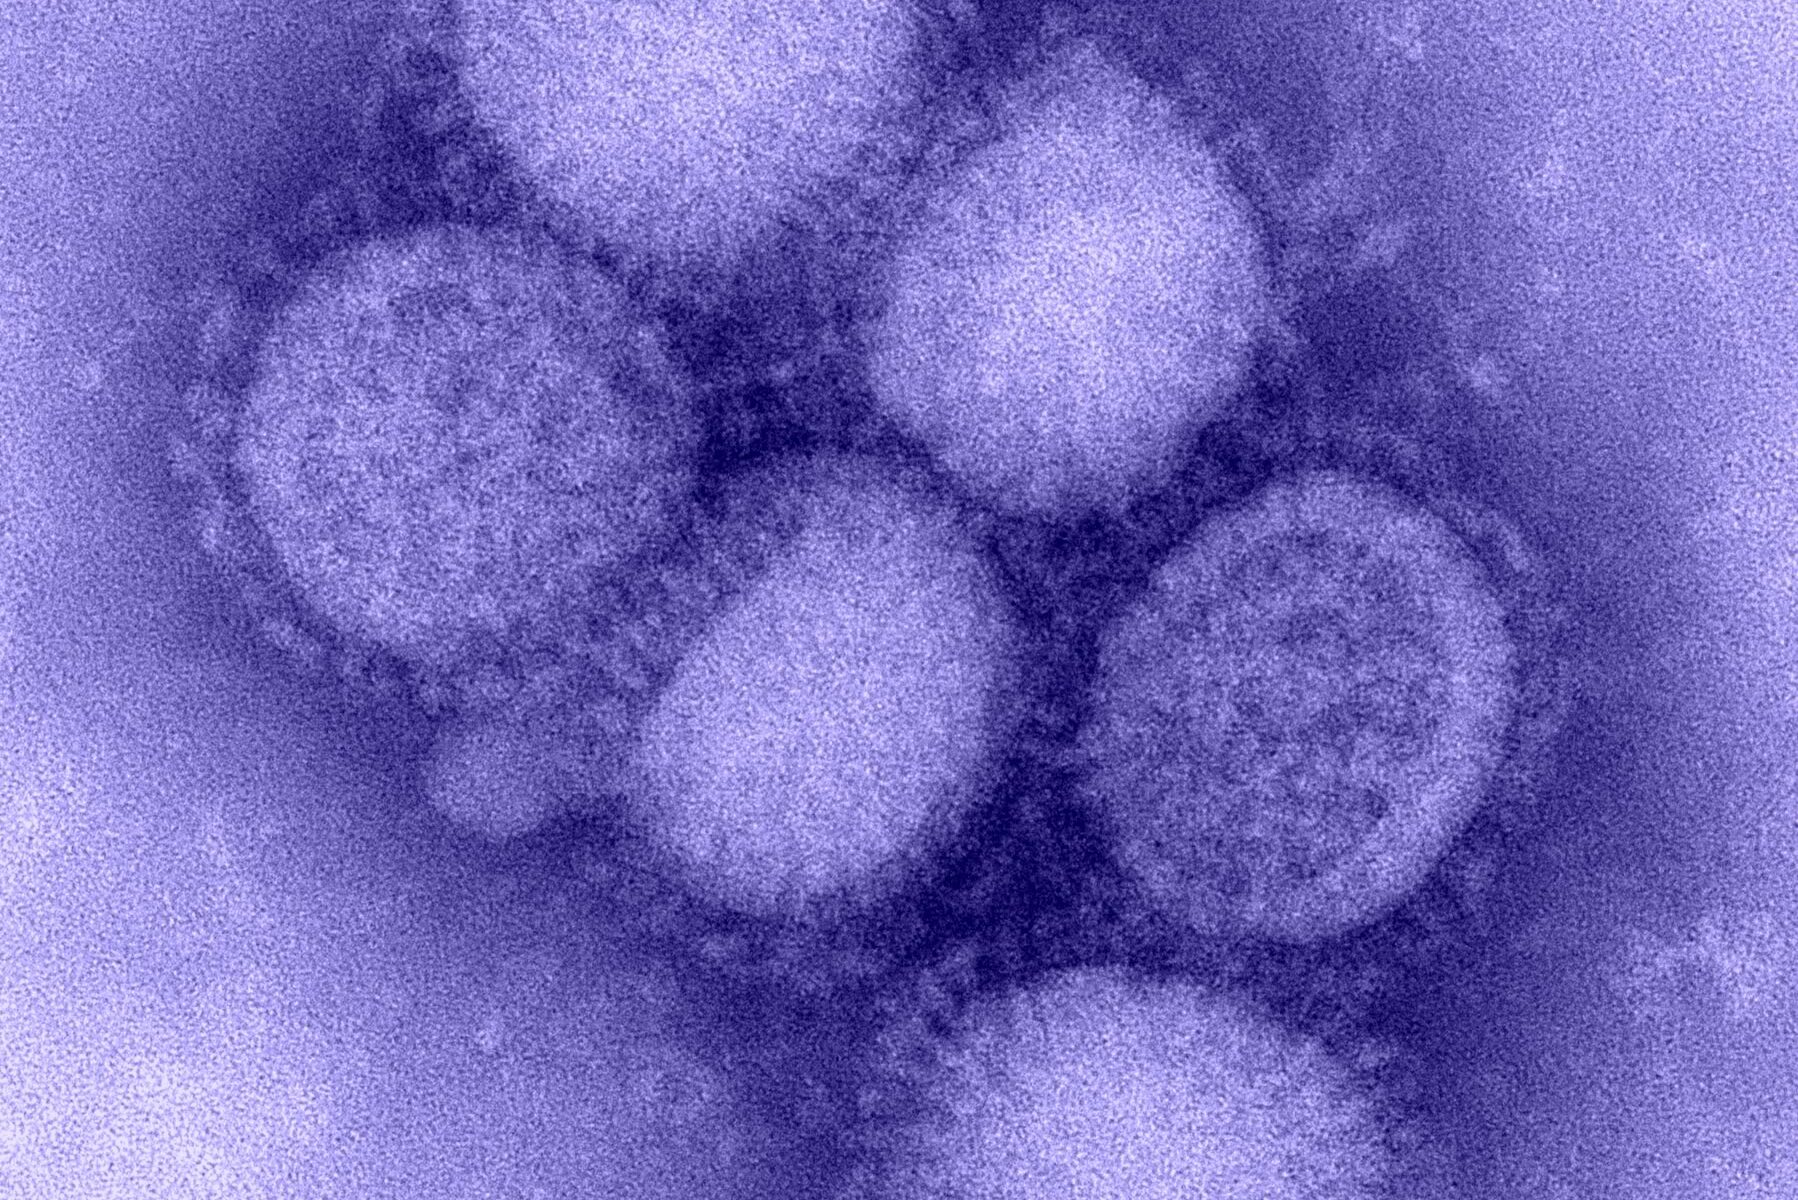 Medidas contra la pandemia han reducido la diversidad de virus de la influenza